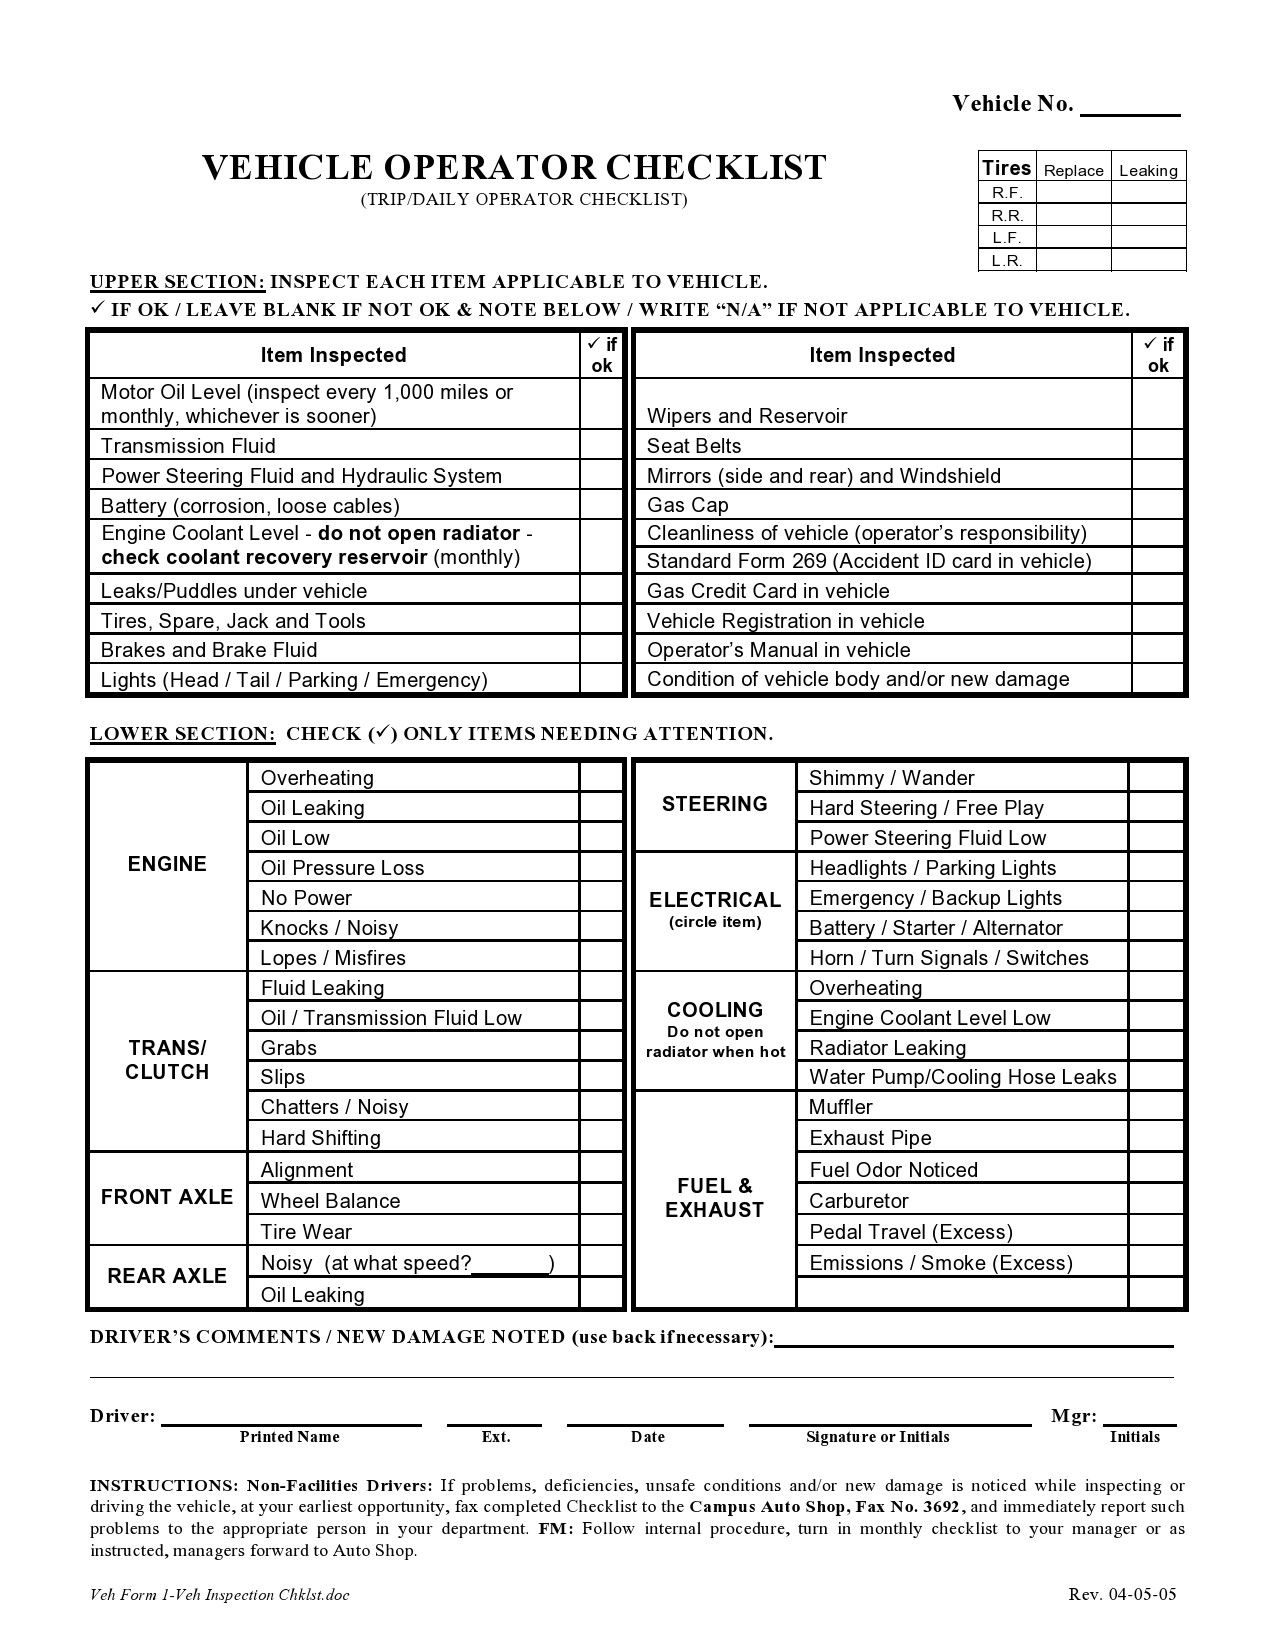 Free vehicle checklist 21